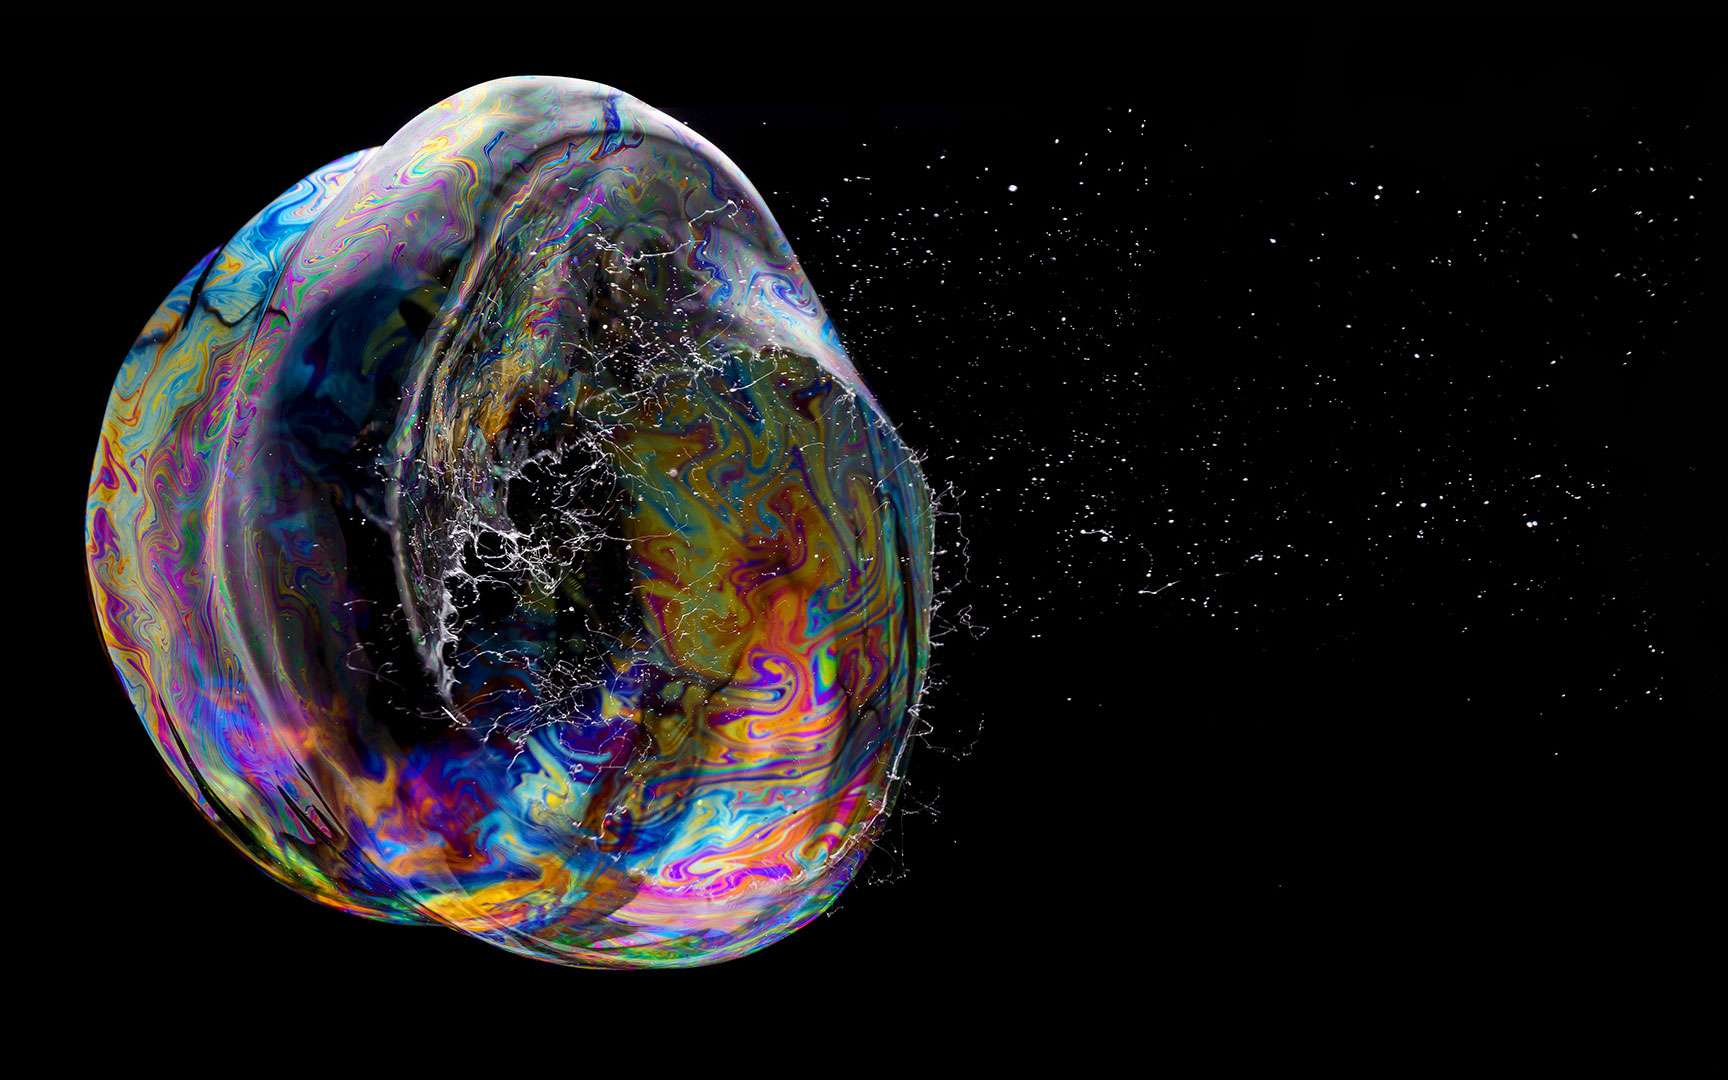 Une bulle de savon éclate. Moment éphémère, mais superbe. La photographie immortalise l'instant. © Fabian Oefner